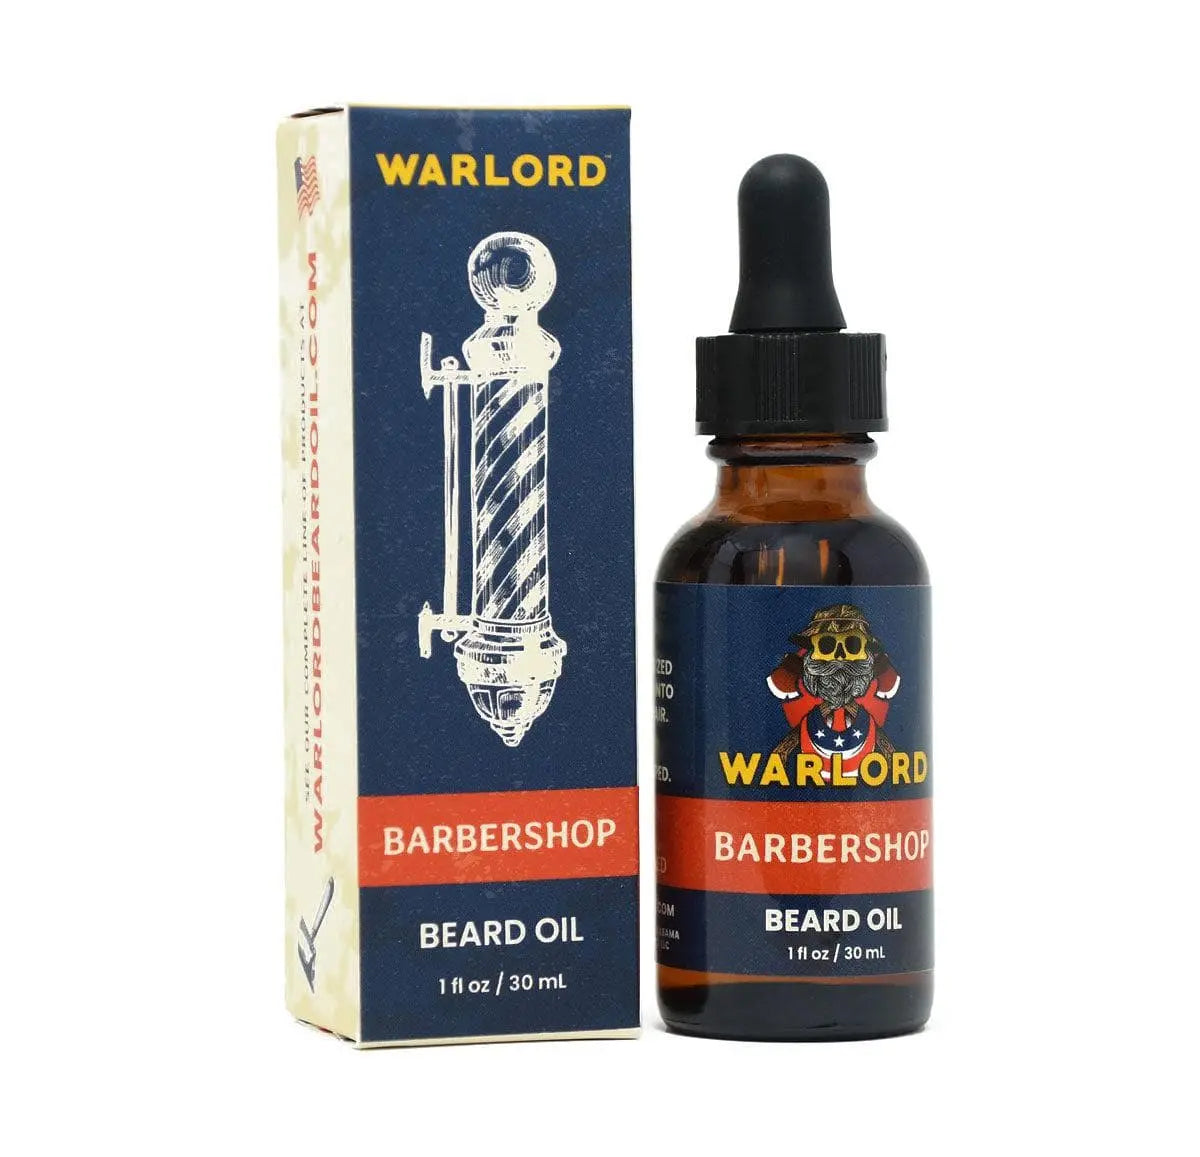 Warlord's Barbershop Beard Oil|Beard Oil